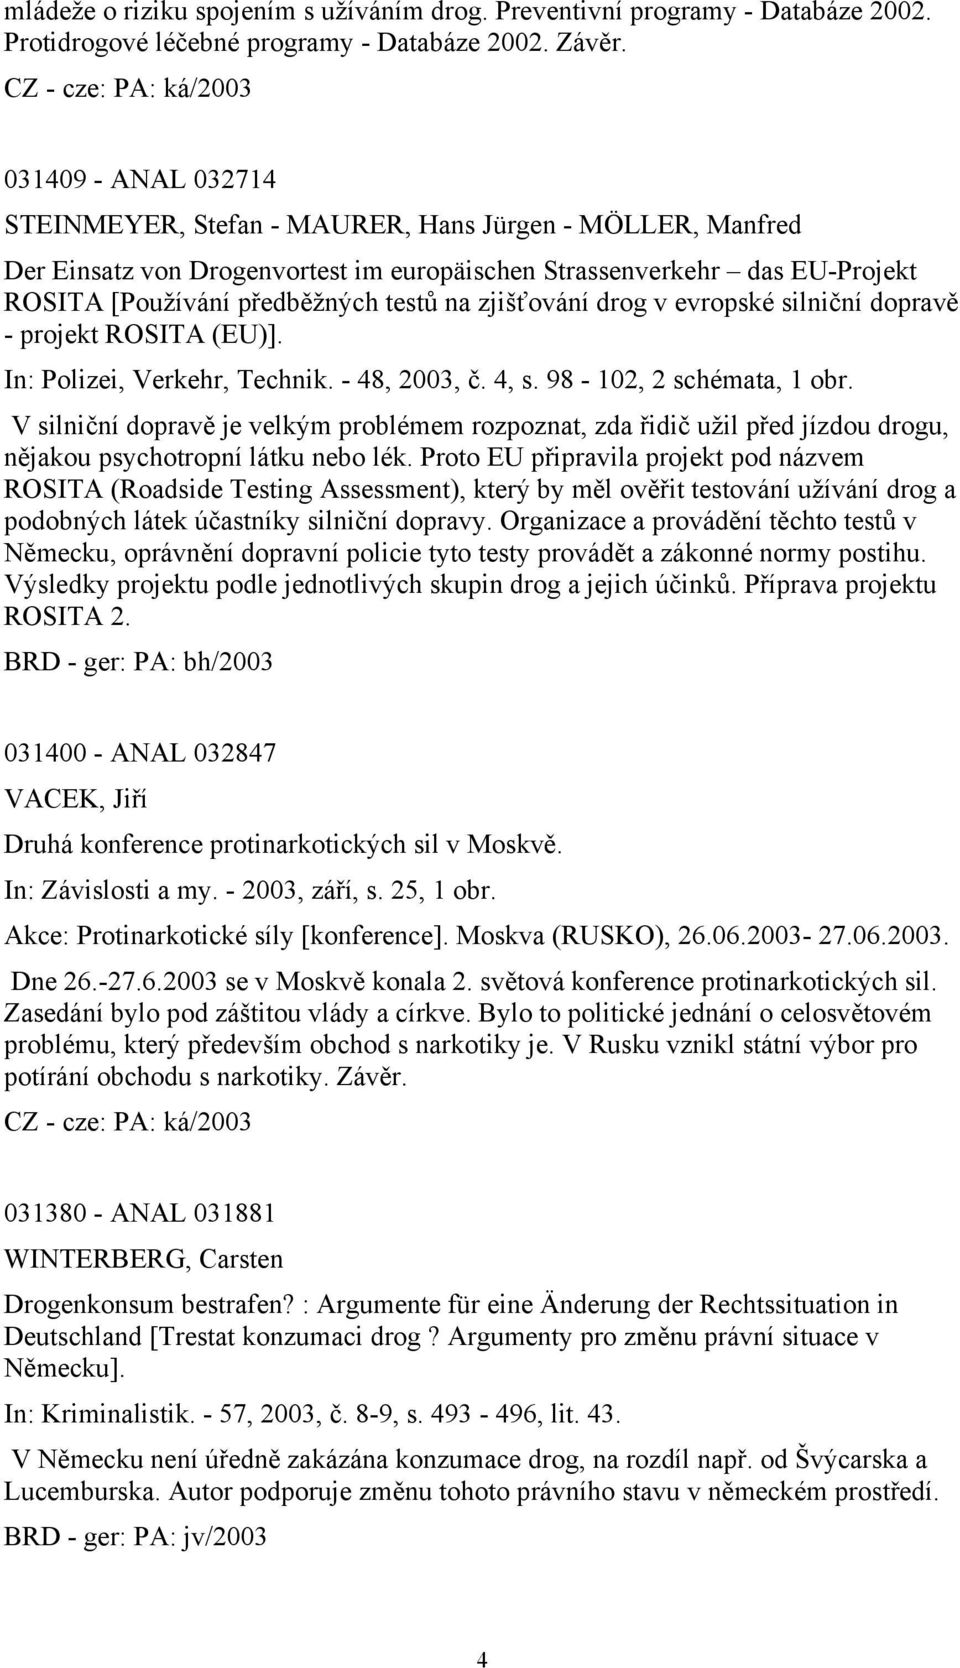 zjišťování drog v evropské silniční dopravě - projekt ROSITA (EU)]. In: Polizei, Verkehr, Technik. - 48, 2003, č. 4, s. 98-102, 2 schémata, 1 obr.